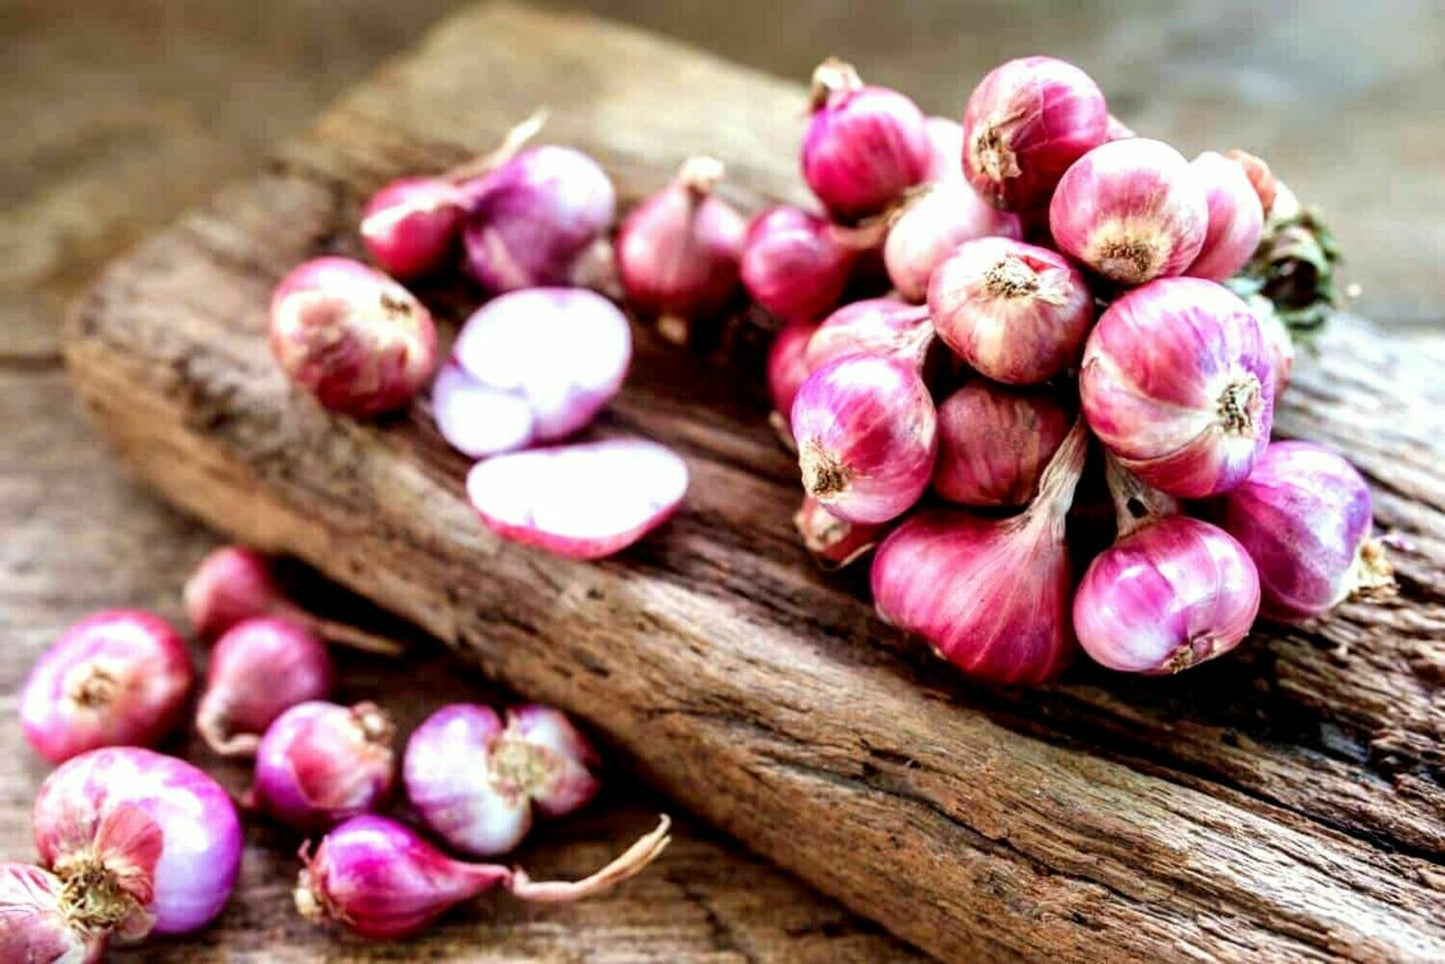 Asian red shallot Hanh Huong onion bulbs - US SEEDS BANK